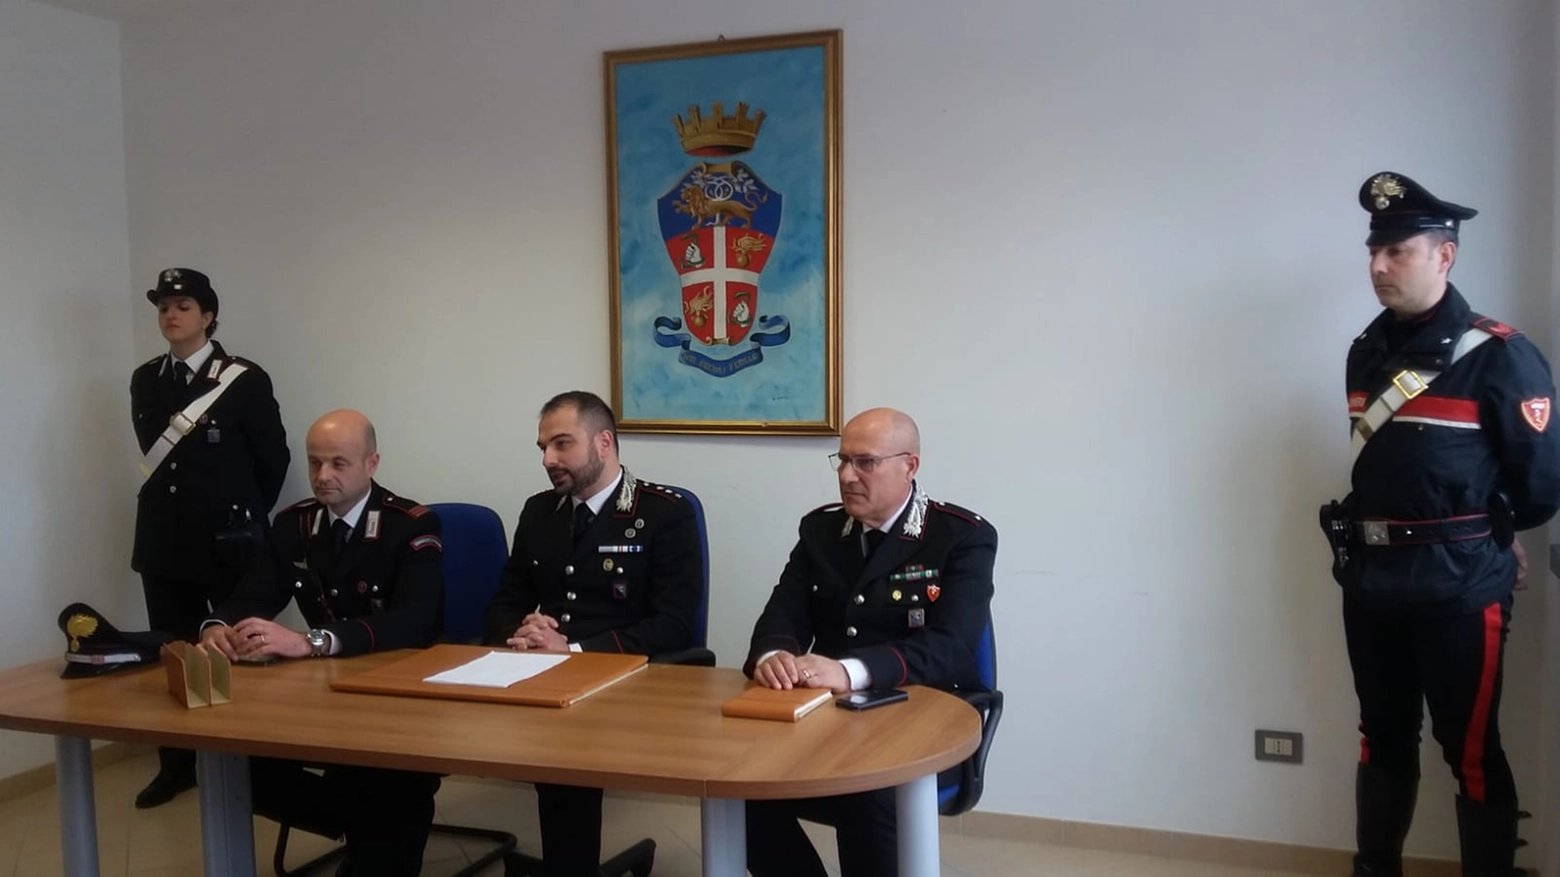 La conferenza stampa dei carabinieri di Tolentino